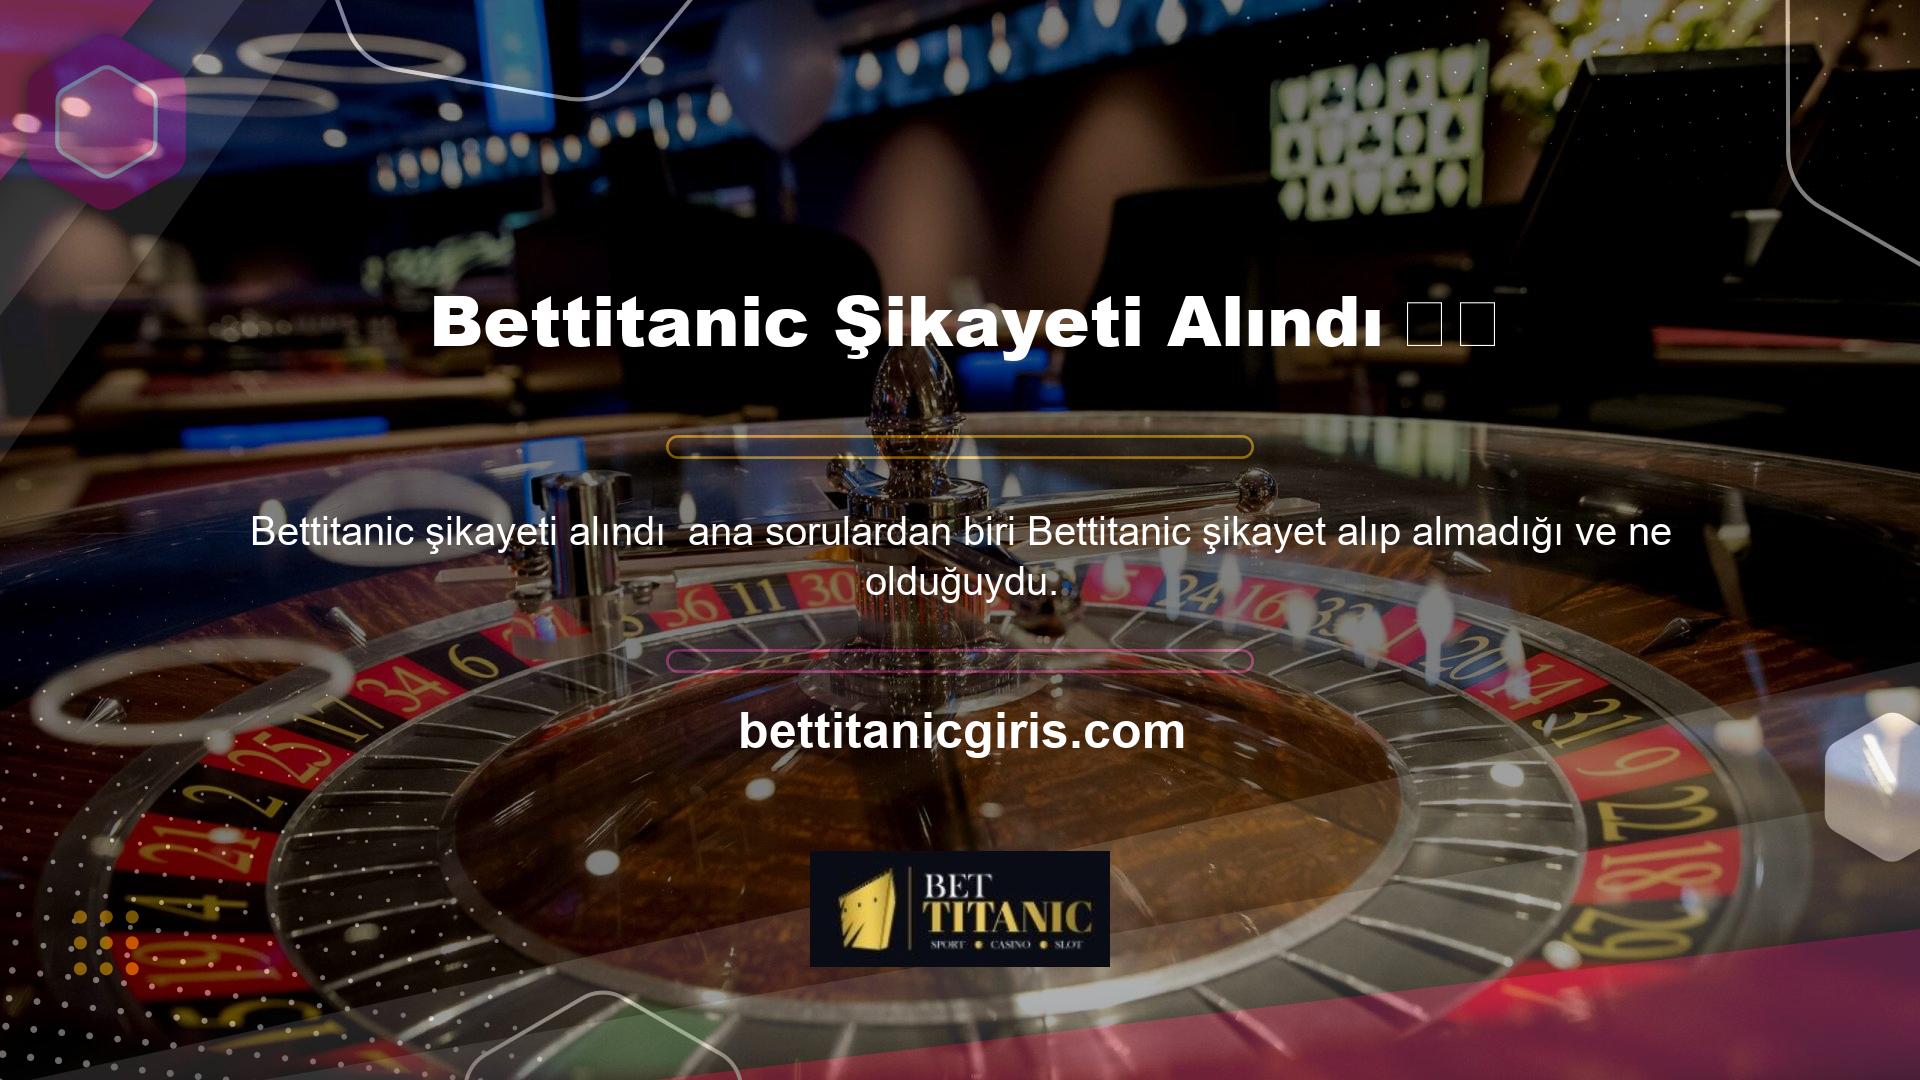 Özellikle Bettitanic bir şikayet aldığında yasa dışı casino severlere yönelik iddiaların niteliğini belirlemek için diğer şikayet sitelerine başvuruyor